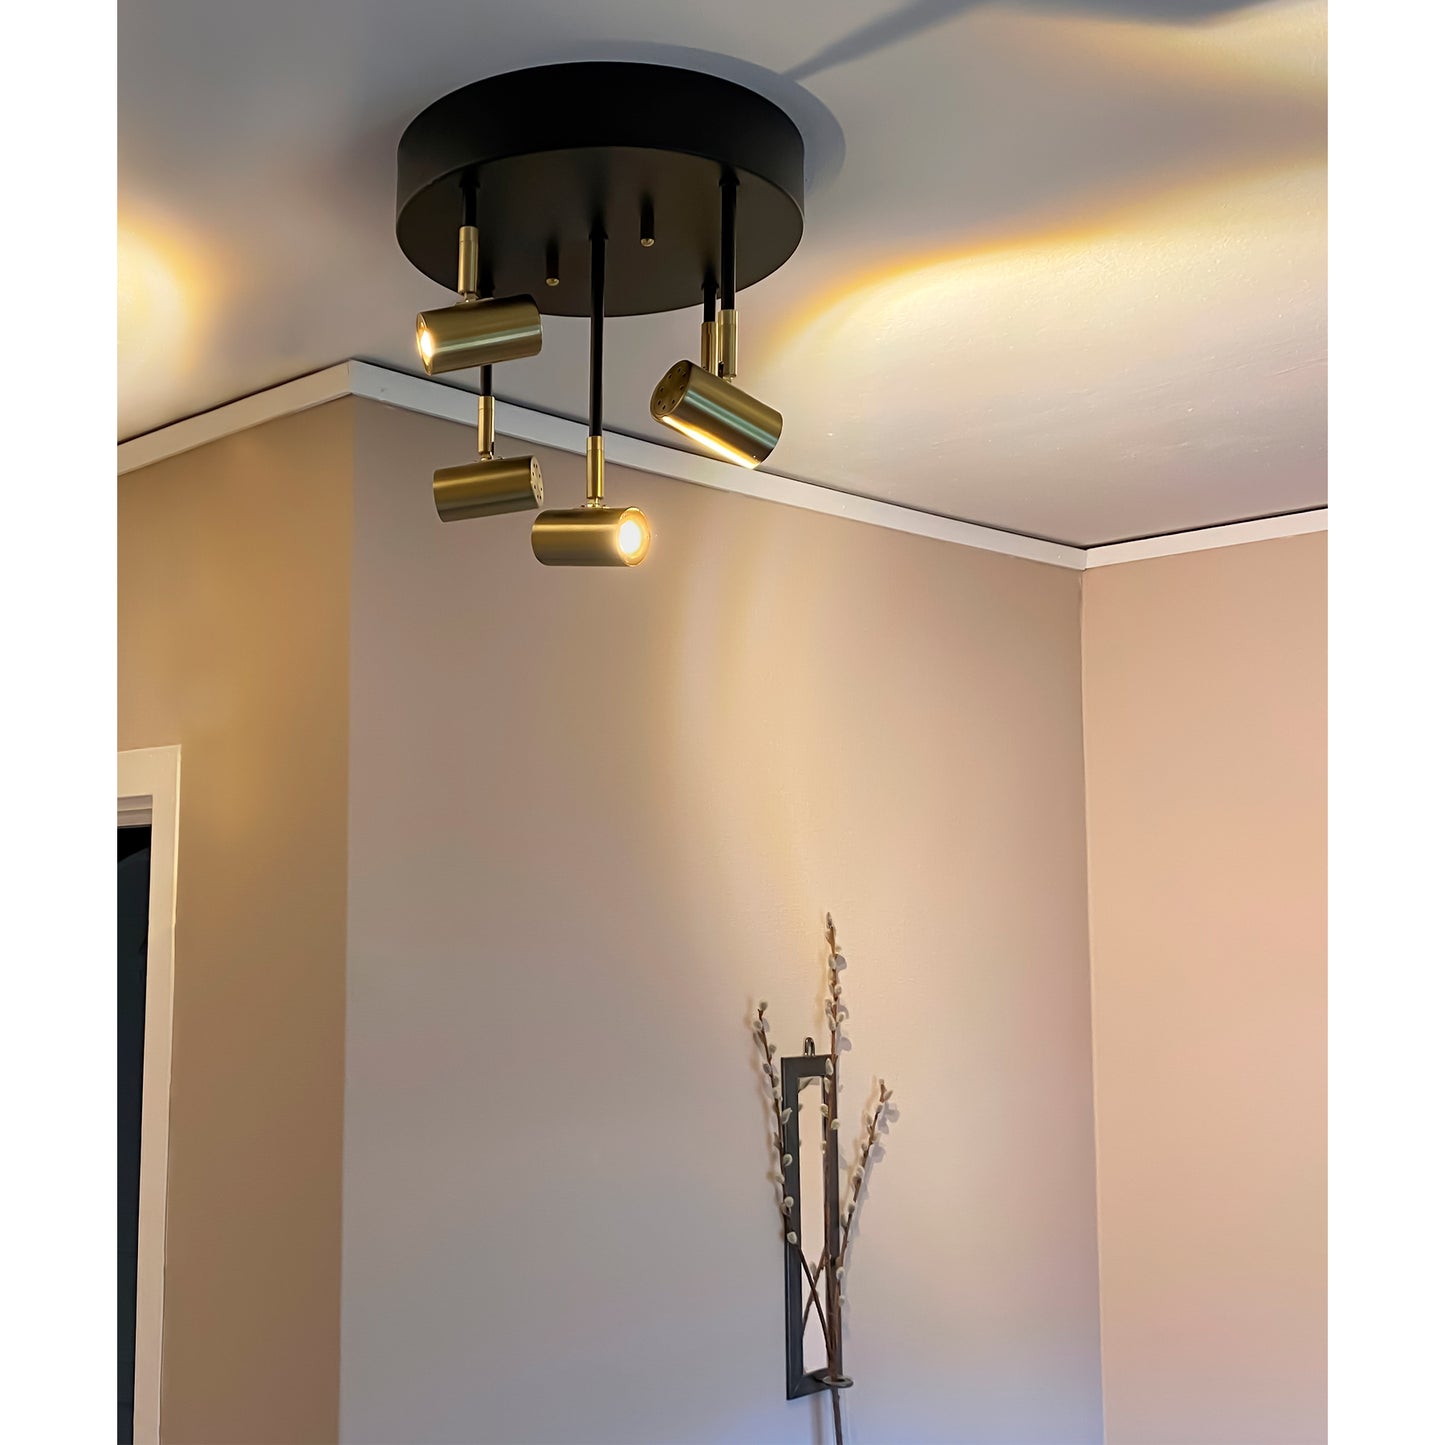 Gusto spotlight taklampe lysende i en gang med fem justerbare spotter i ulik høyde plassert på en rund takplate, laget i sort metall og messing - Aneta belysning